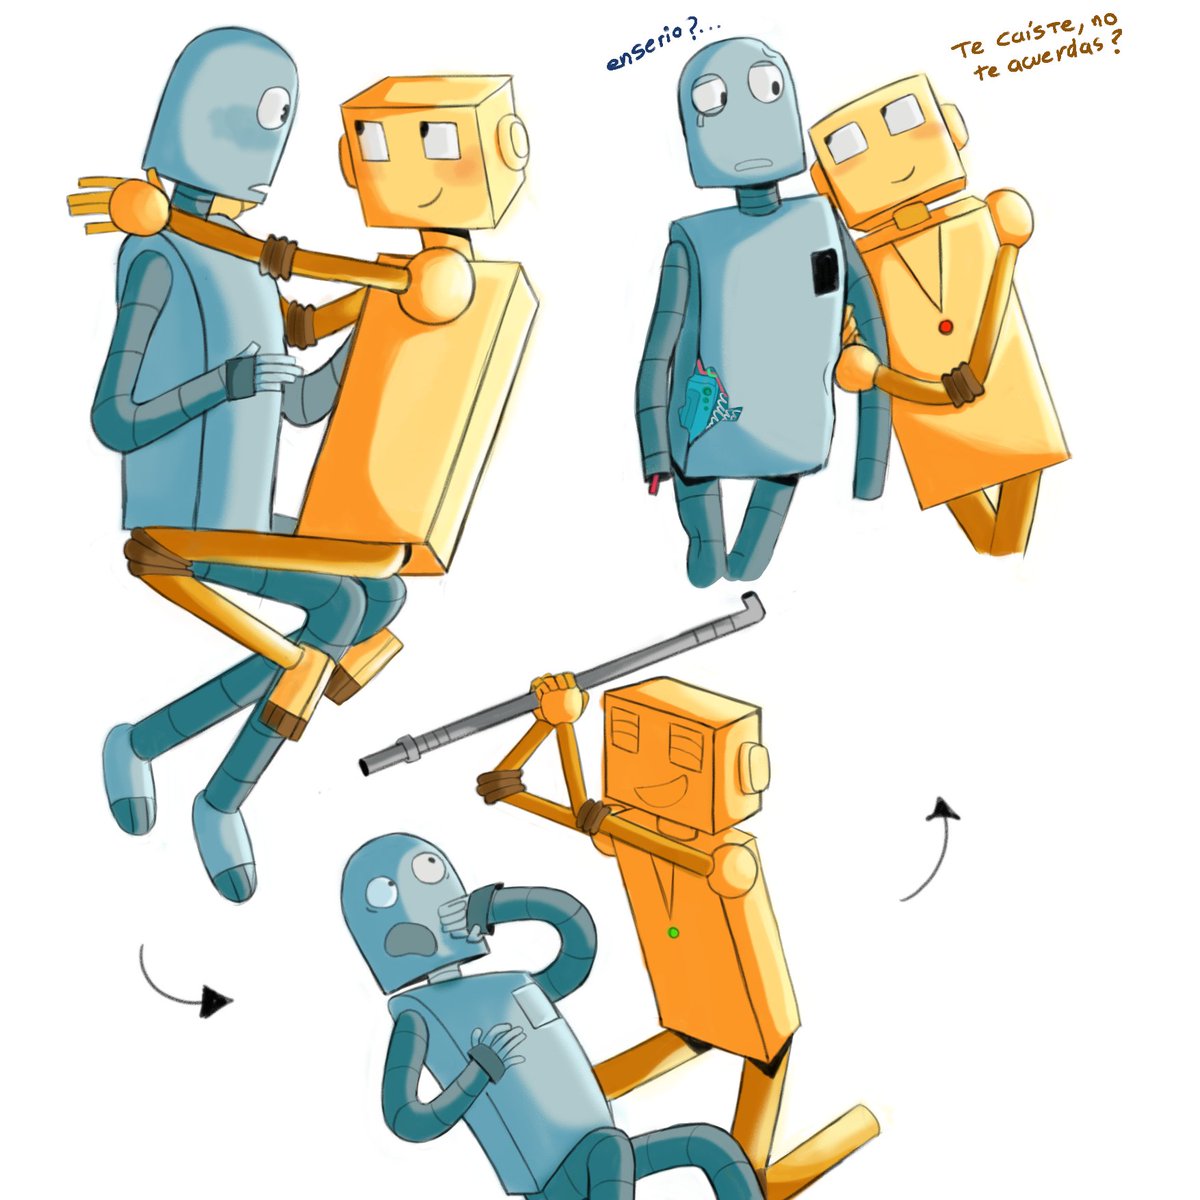 Dibujo que tenía pensado terminarlo antes pero no pude 😿💪,,,, Sería buena idea hacer un fanart de Aishite Aishite Aishite con Robot o Tin? (; U ;)
#RobotDreams #RobotDreamsFanart